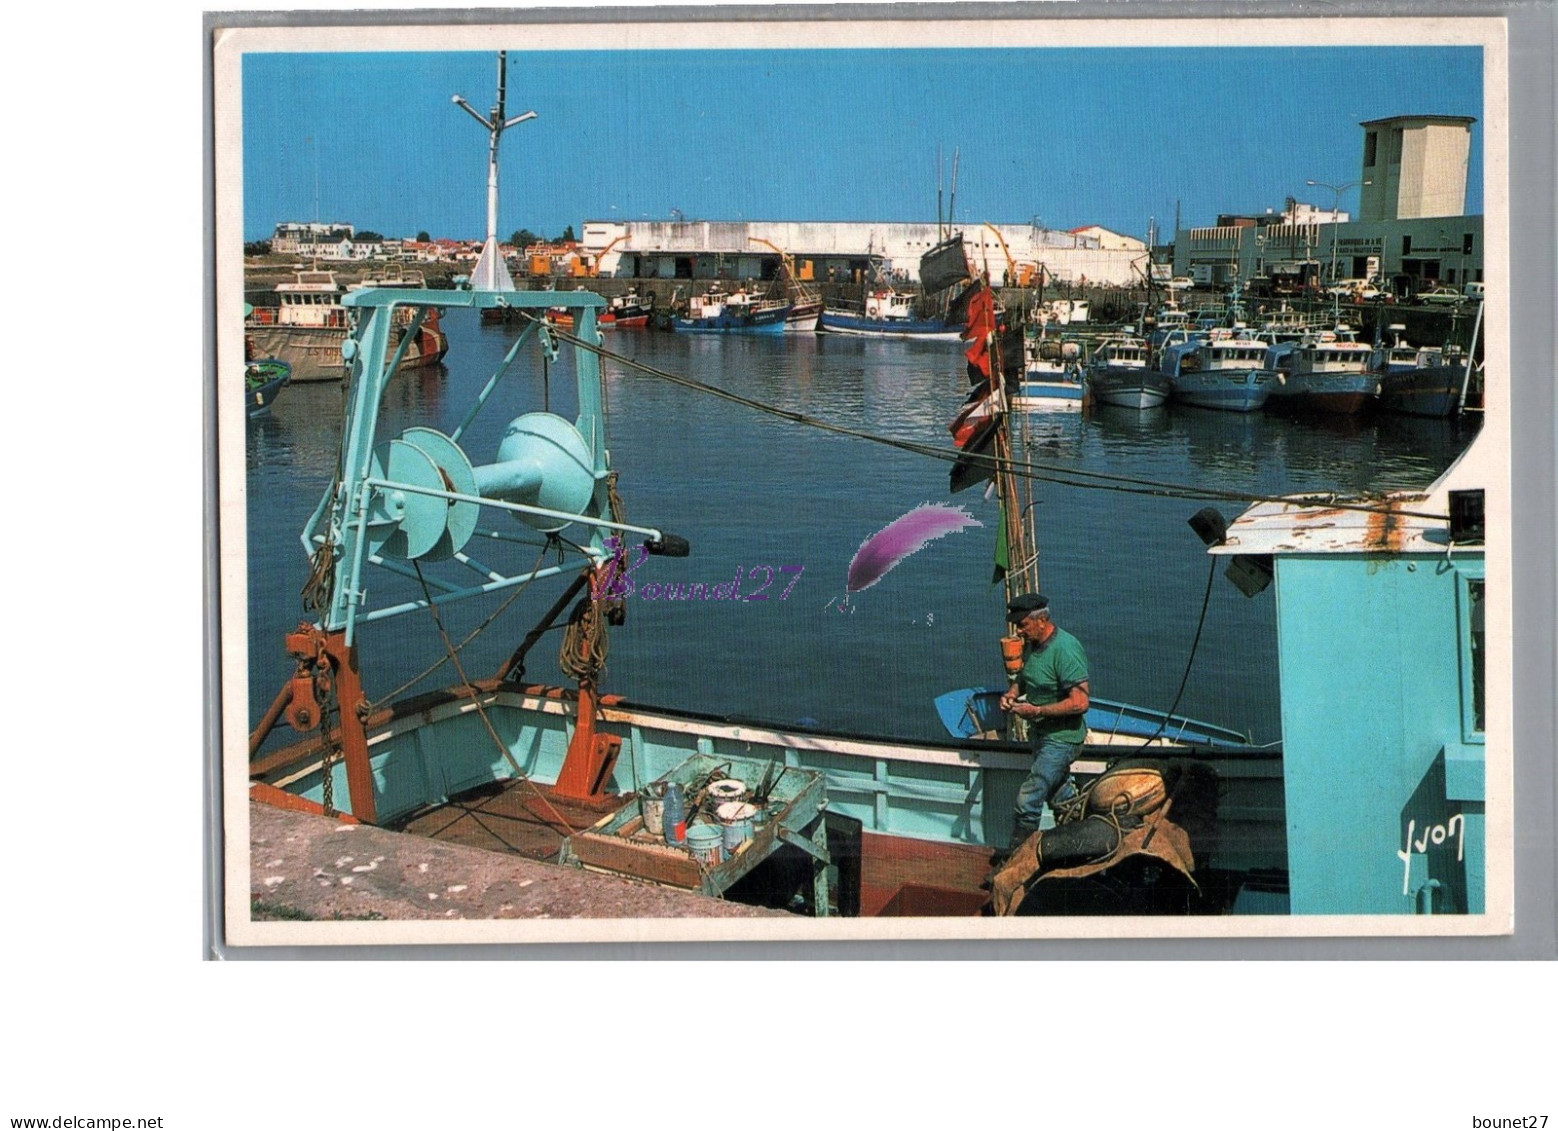 SAINT GILLES CROIX DE VIE 85 - Le Port De Pêche Pêcheur Sur Son Bâteau 1996 - Saint Gilles Croix De Vie